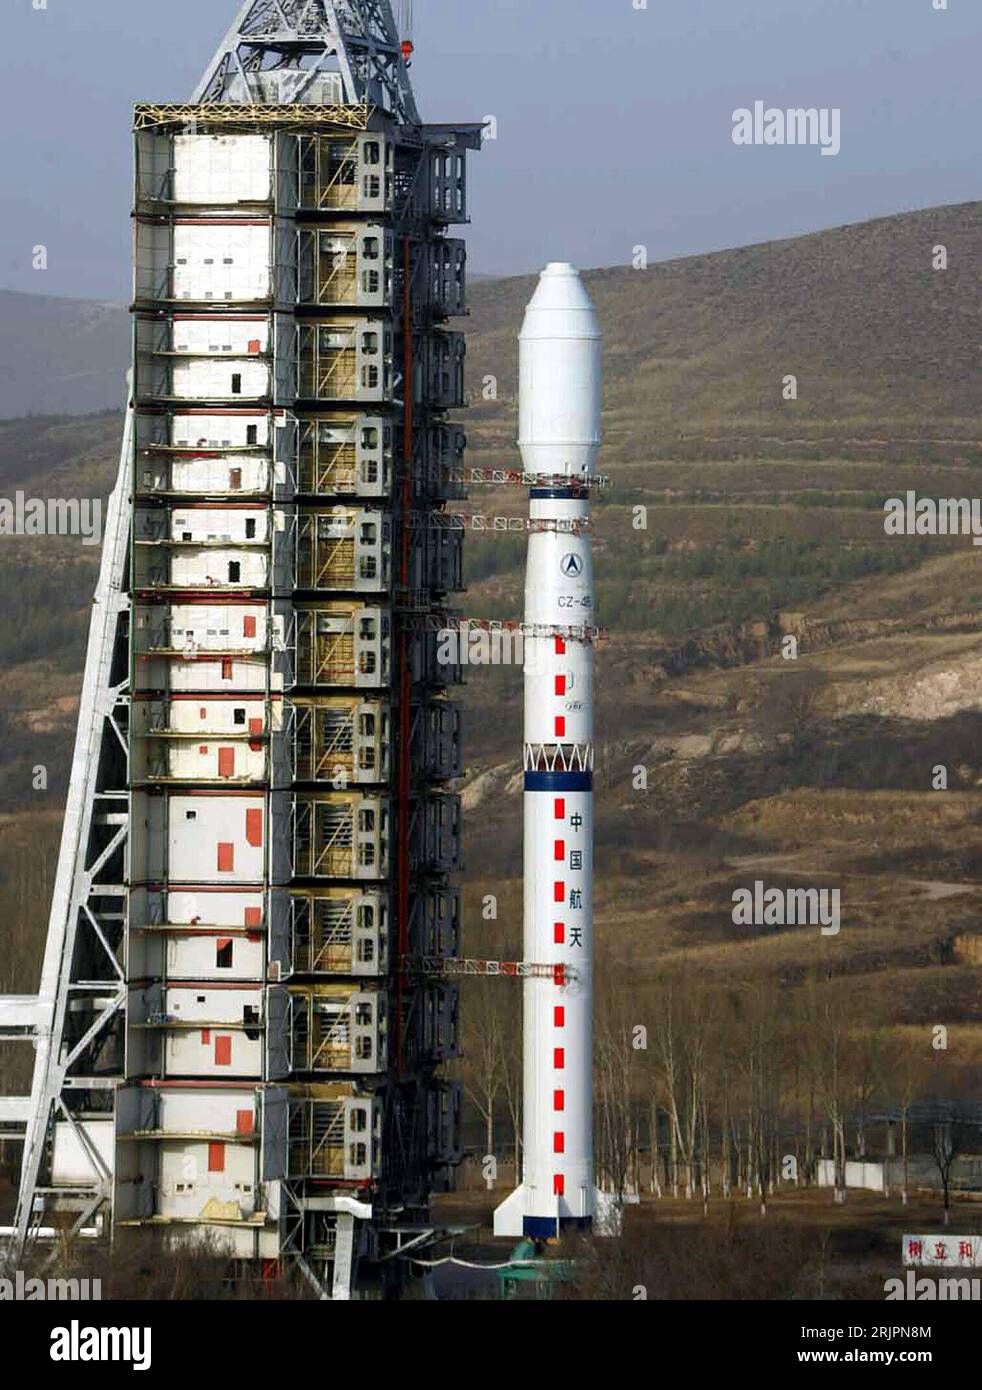 Bildnummer: 51212747  Datum: 26.04.2006  Copyright: imago/Xinhua Trägerrakete Langer Marsch 4-B - an Bord ein Satellit zur Erderkundung - wartet auf den Start von der Abschussrampe des Taiyuan Satellite Center - PUBLICATIONxNOTxINxCHN, Objekte; 2006, Taiyuan, Shanxi, Raumfahrt, 4B, Long March, Chang Zheng, LM, CZ, Trägerraketen, Rakete, Raketen, Starts, startet, startend, Raketenstart, Raketenstarts, Raumfahrtzentrum, , Rampe, Rampen, Abschussrampe, Abschussrampen, Raketenabschussrampe, Raketenabschussrampen; , hoch, Kbdig, Einzelbild, China,  , / Fotostory Stock Photo